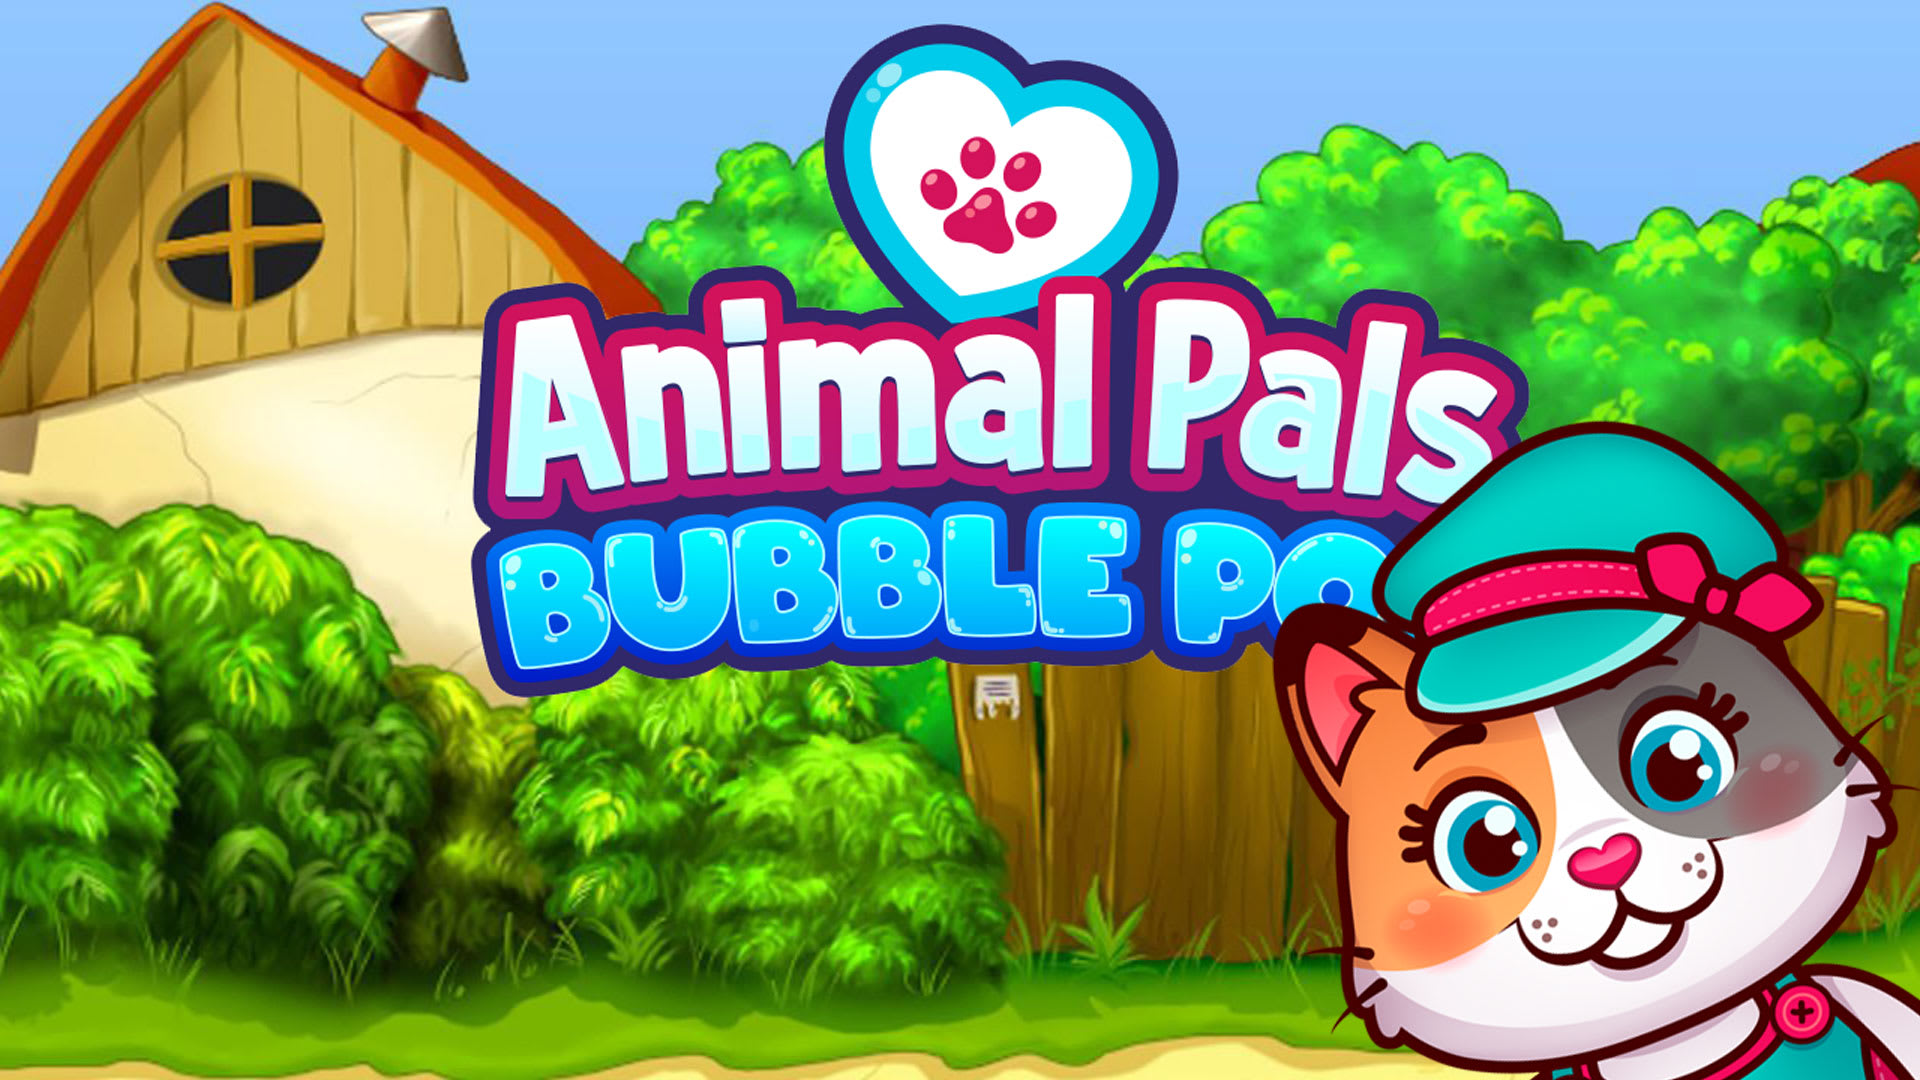 Animal Pals Bubble Pop